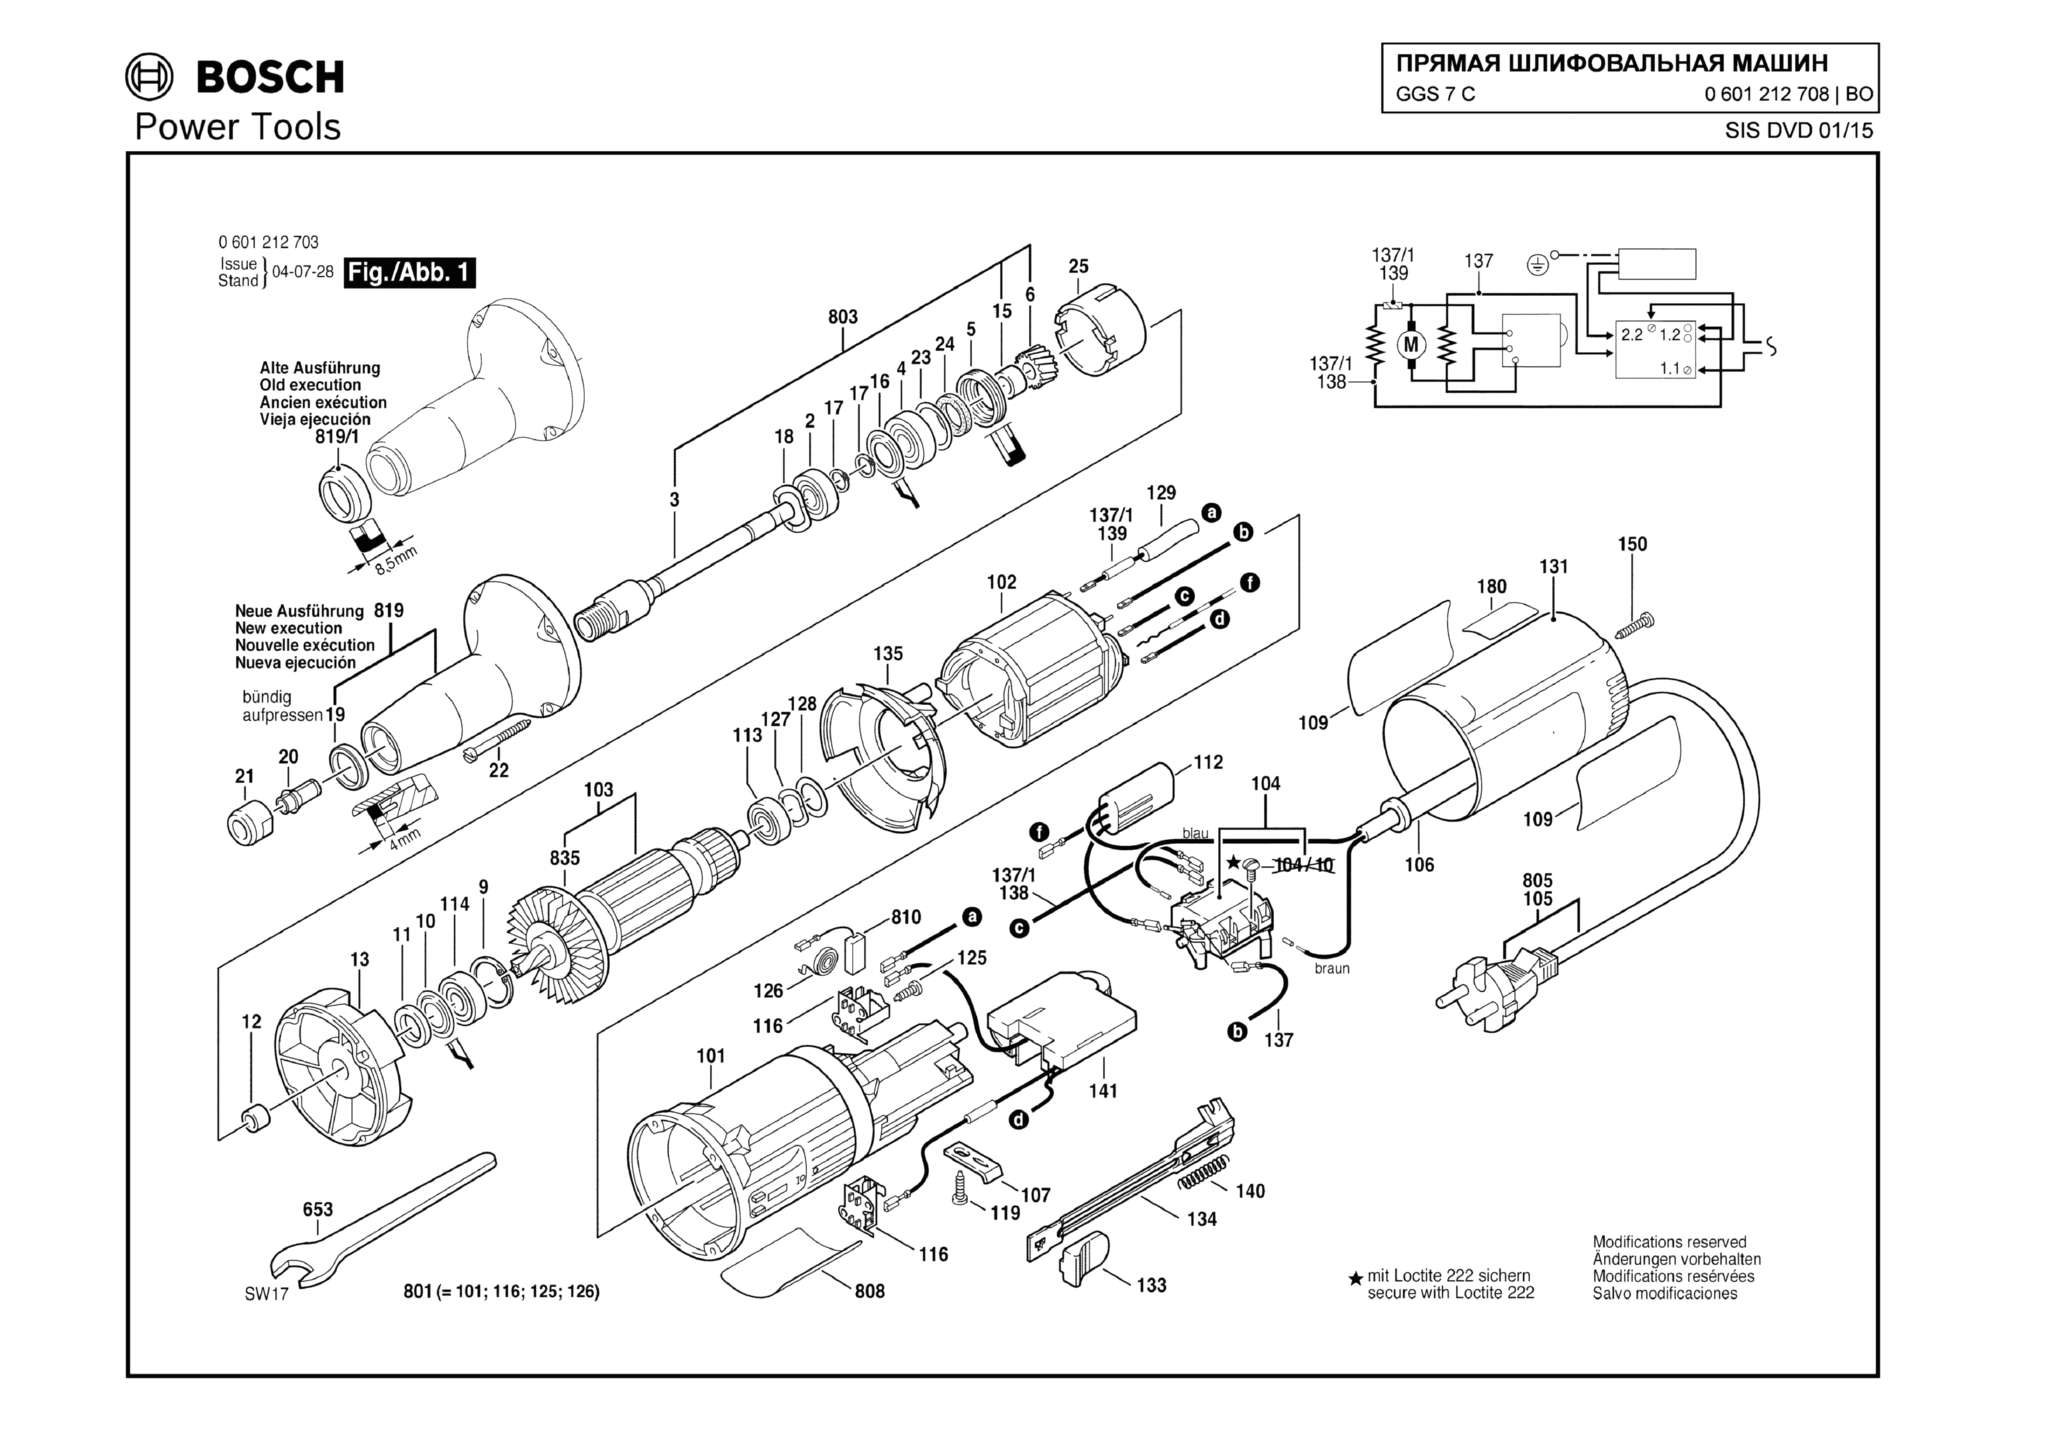 Запчасти, схема и деталировка Bosch GGS 7 C (ТИП 0601212708)